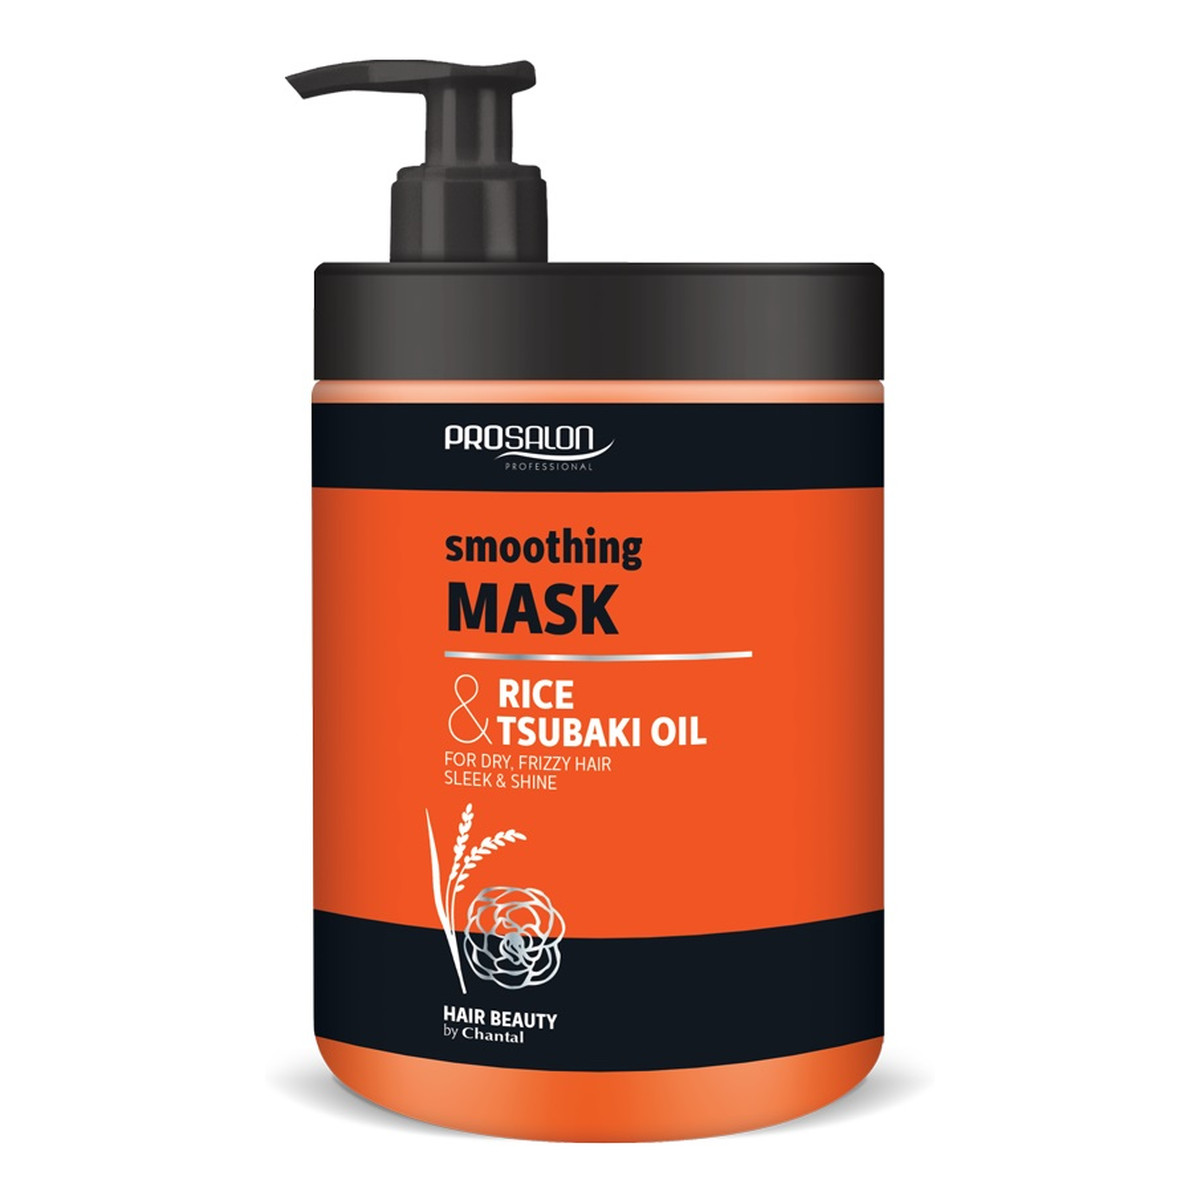 Chantal Profesional Prosalon smoothing mask wygładzająca maska do włosów ryż & olej tsubaki 1000g